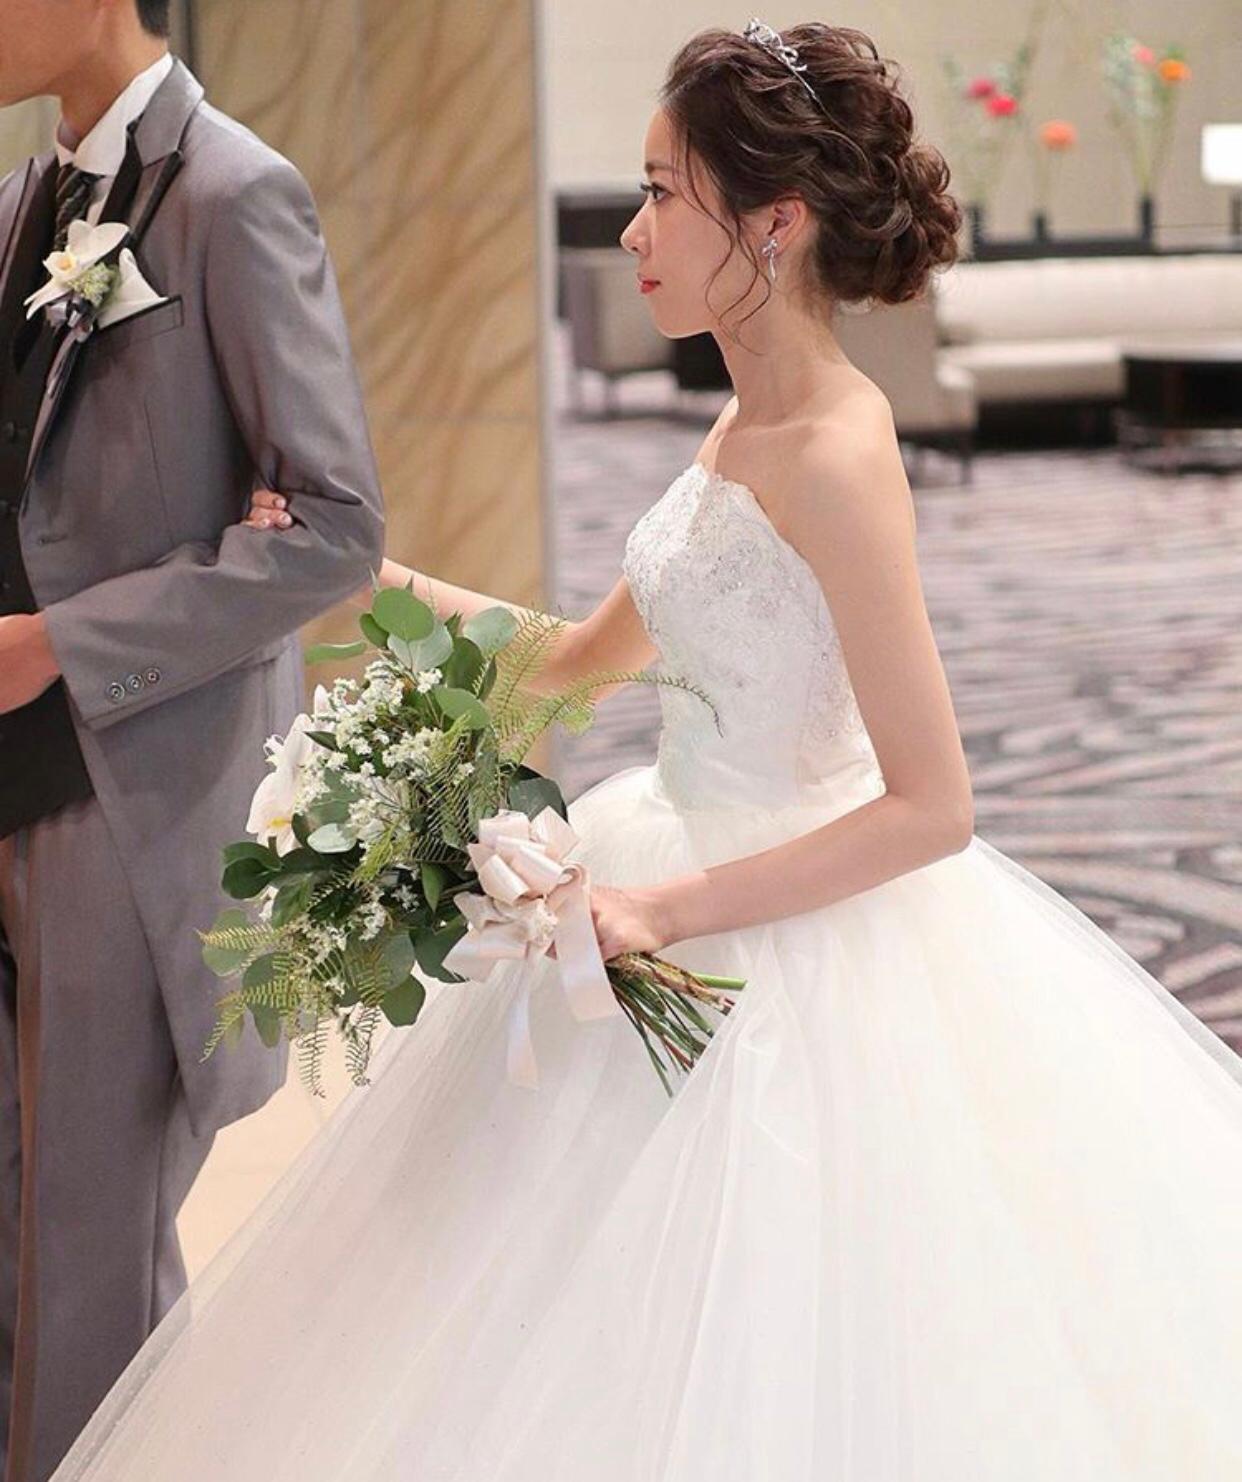 Queeny Ng 婚禮統籌師專欄文章: 婚紗創造出獨特的款式